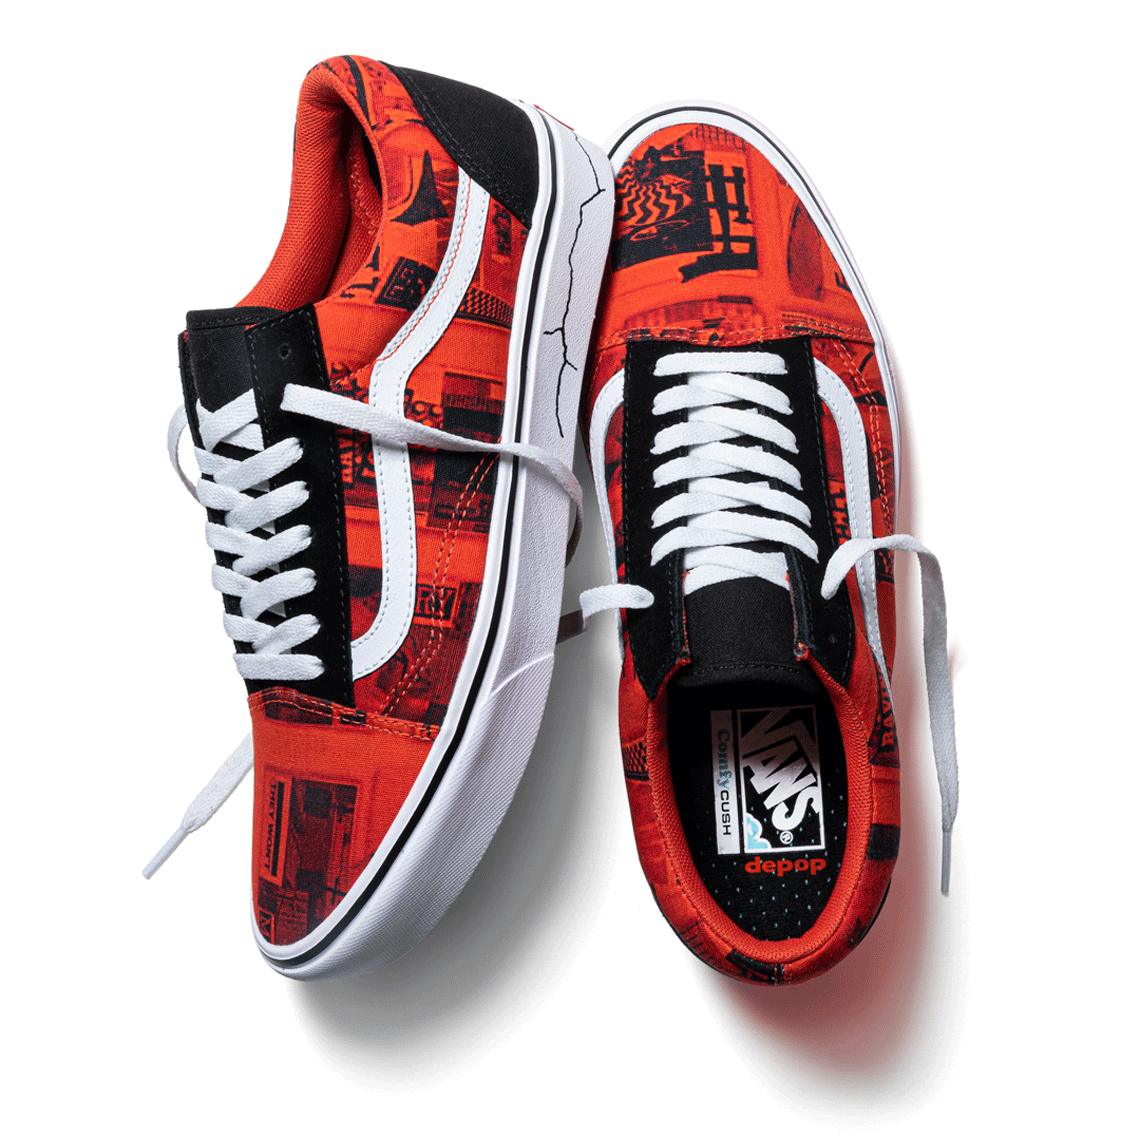 Depop Vans UK Collection Release Date | SneakerNews.com